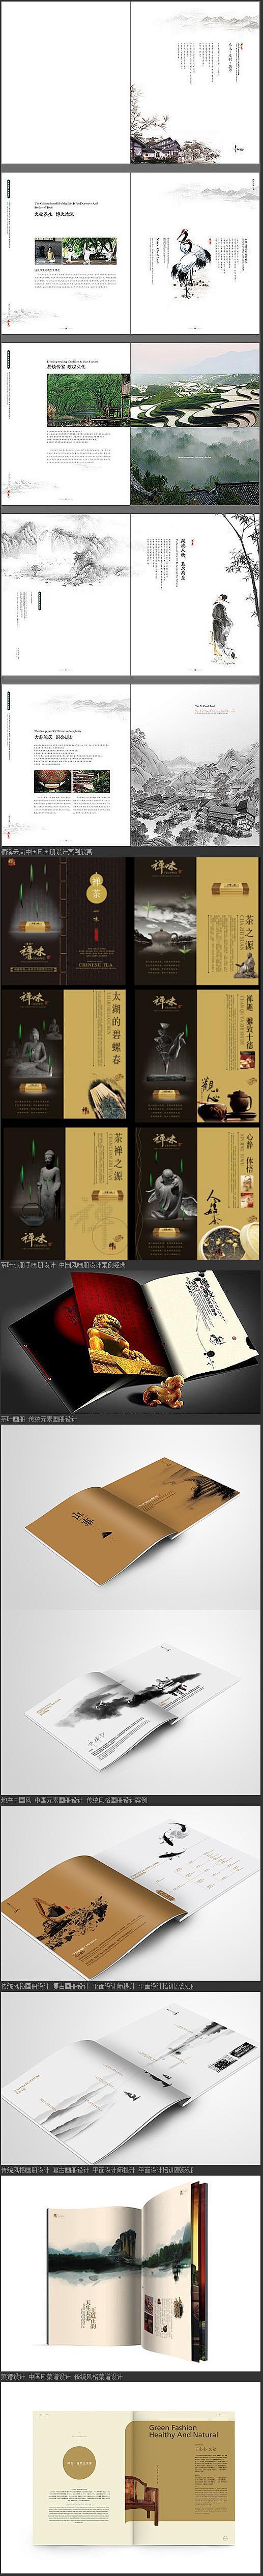 中国风画画册设计 水墨画册设计欣赏 传统...